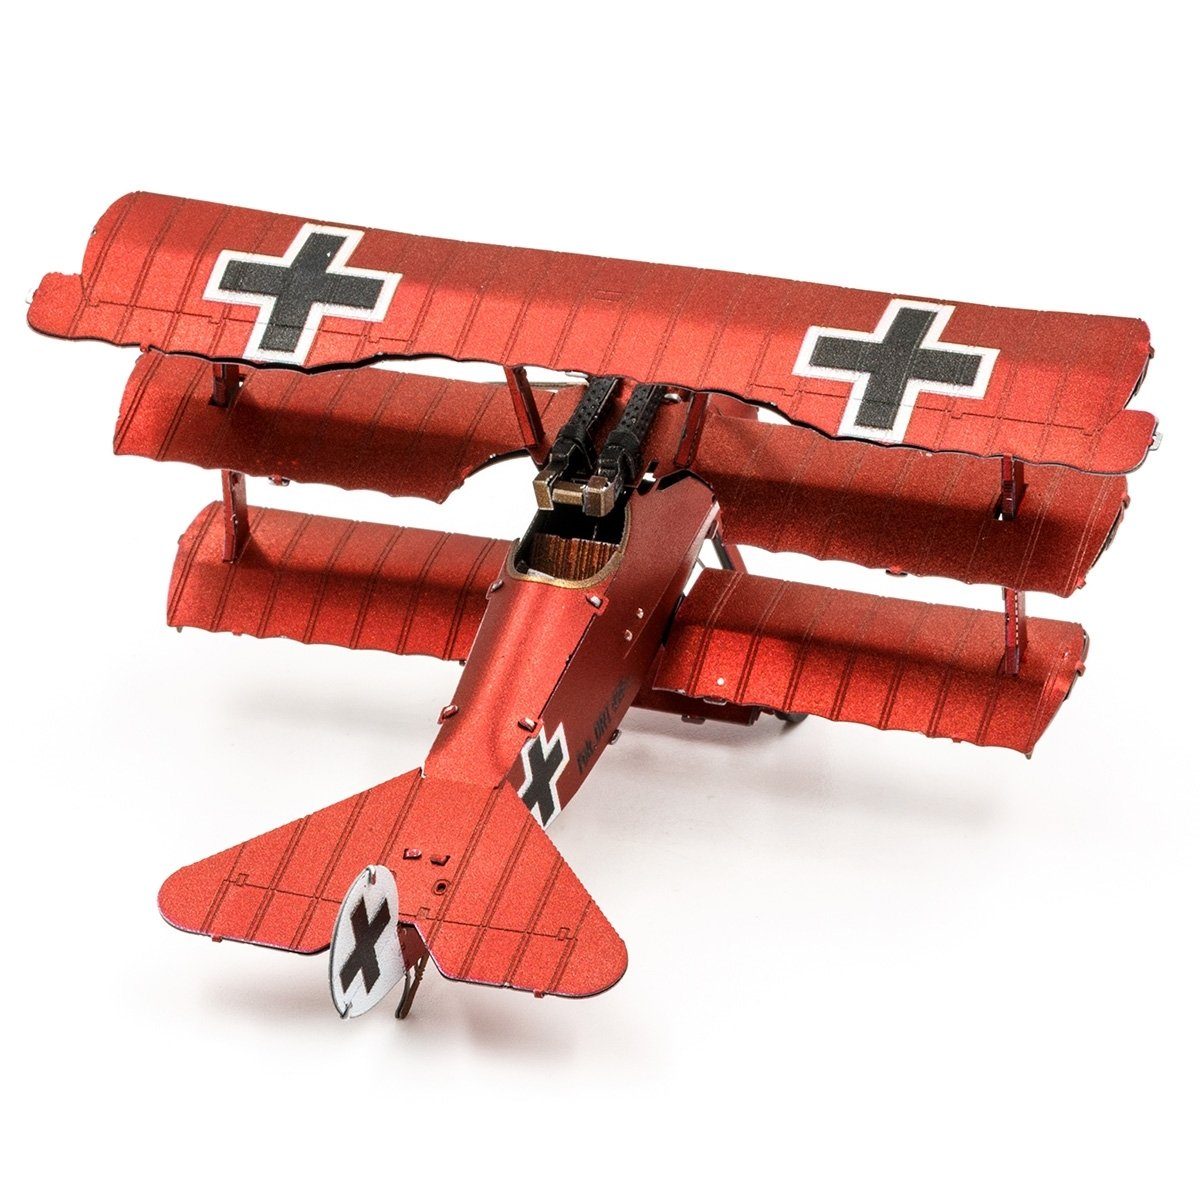 Fokker Metal Dr. - detailreicher - I Earth® Dreidecker-Jagdflugzeug Modellbausatz Metall-Bausatz